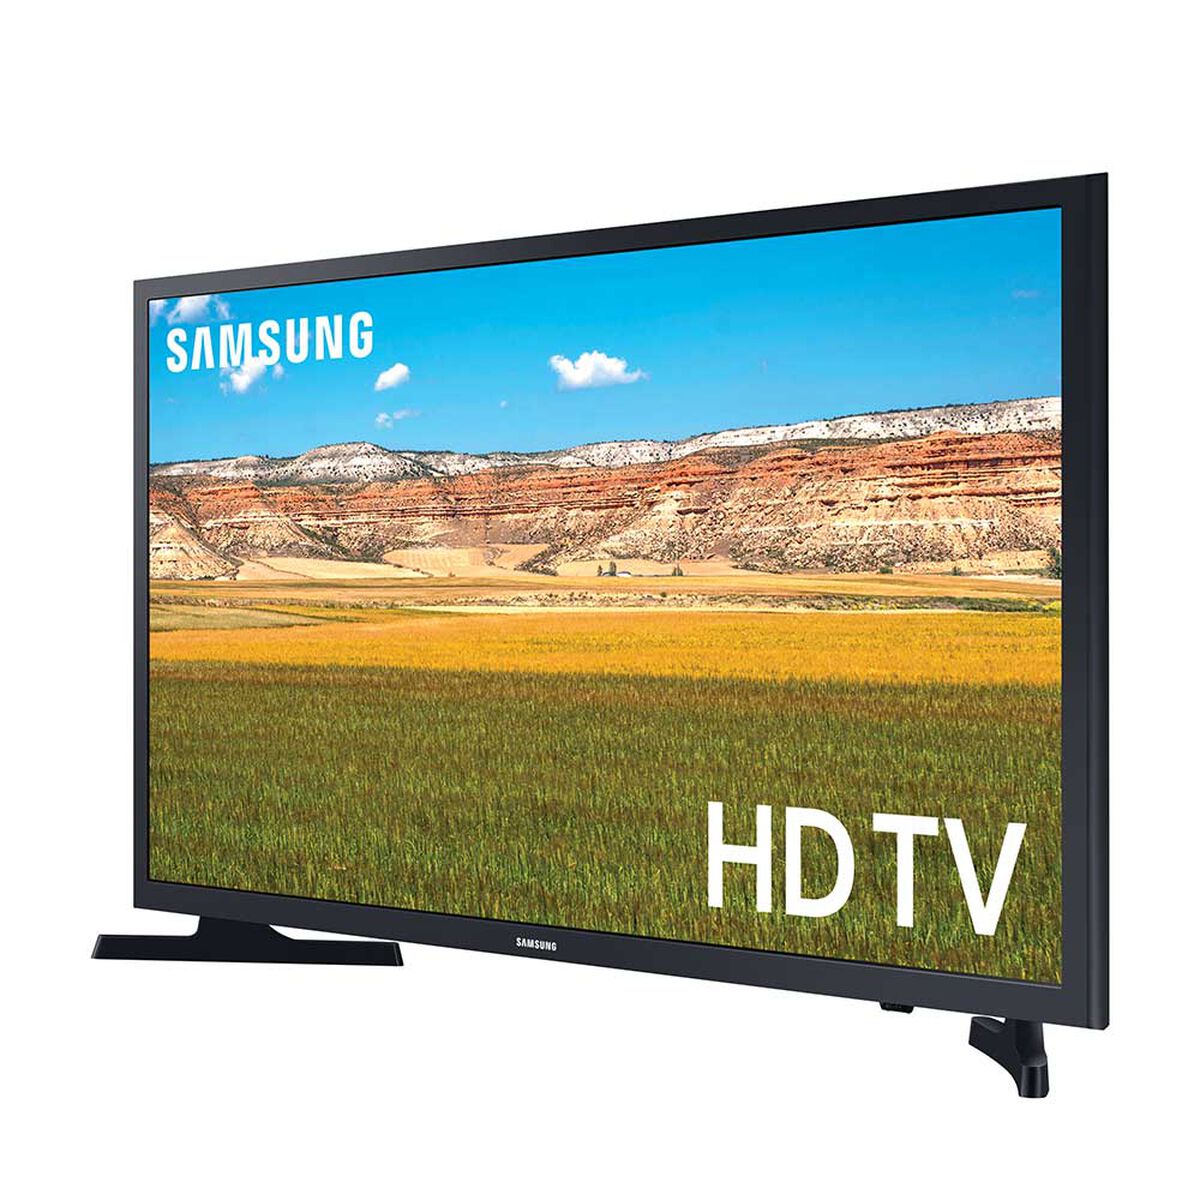 LED 32" Samsung T4202 Smart TV HD